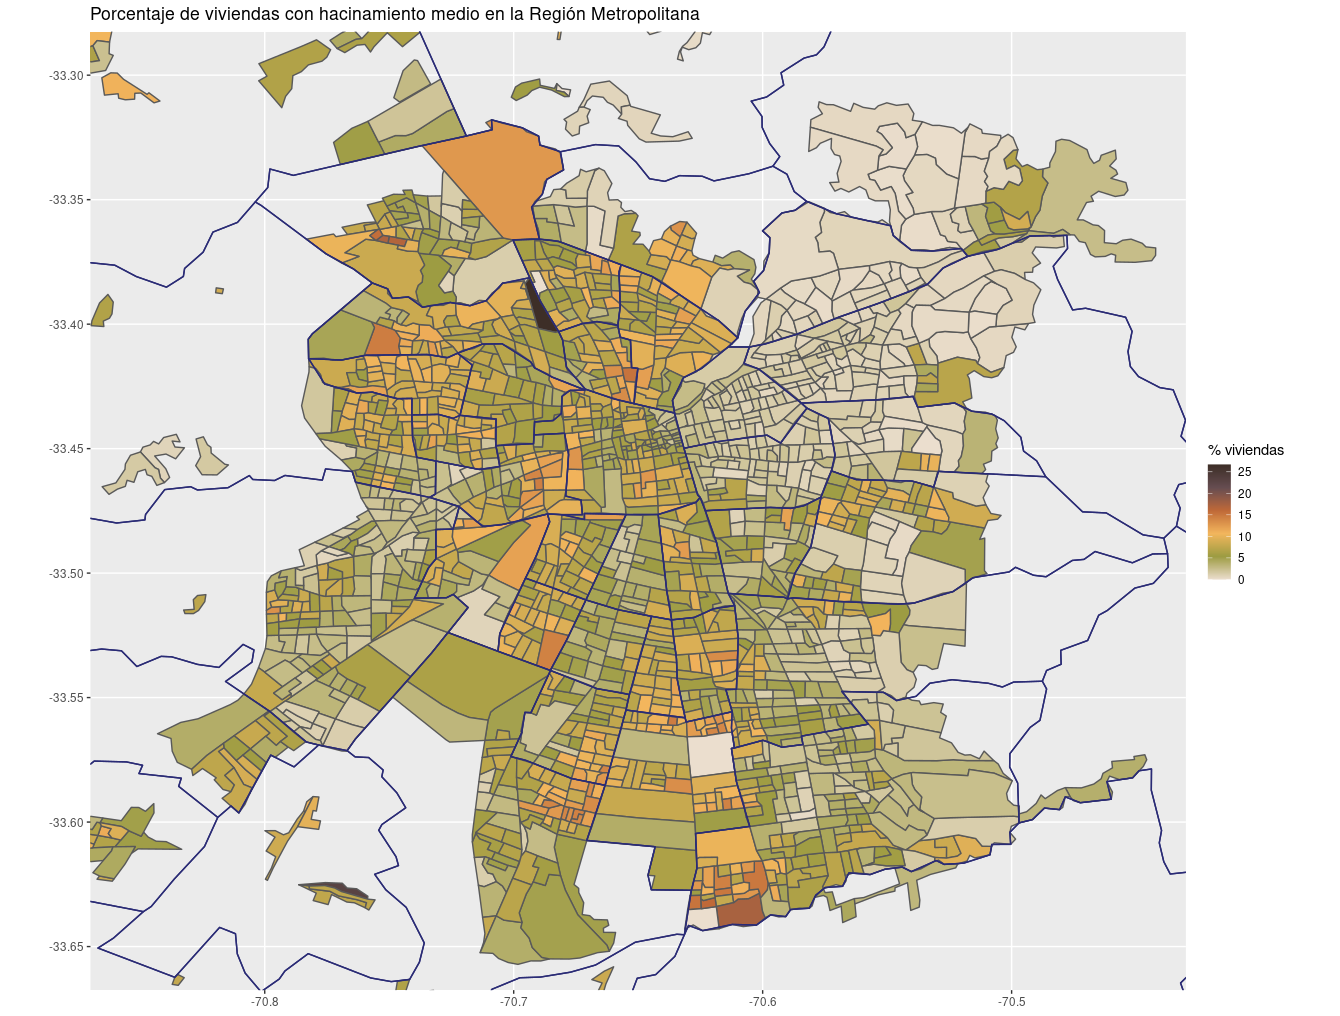 Mapa de la Región Metropolitana con polígonos que representan los barrios y coloreados según el grado de hacinamiento